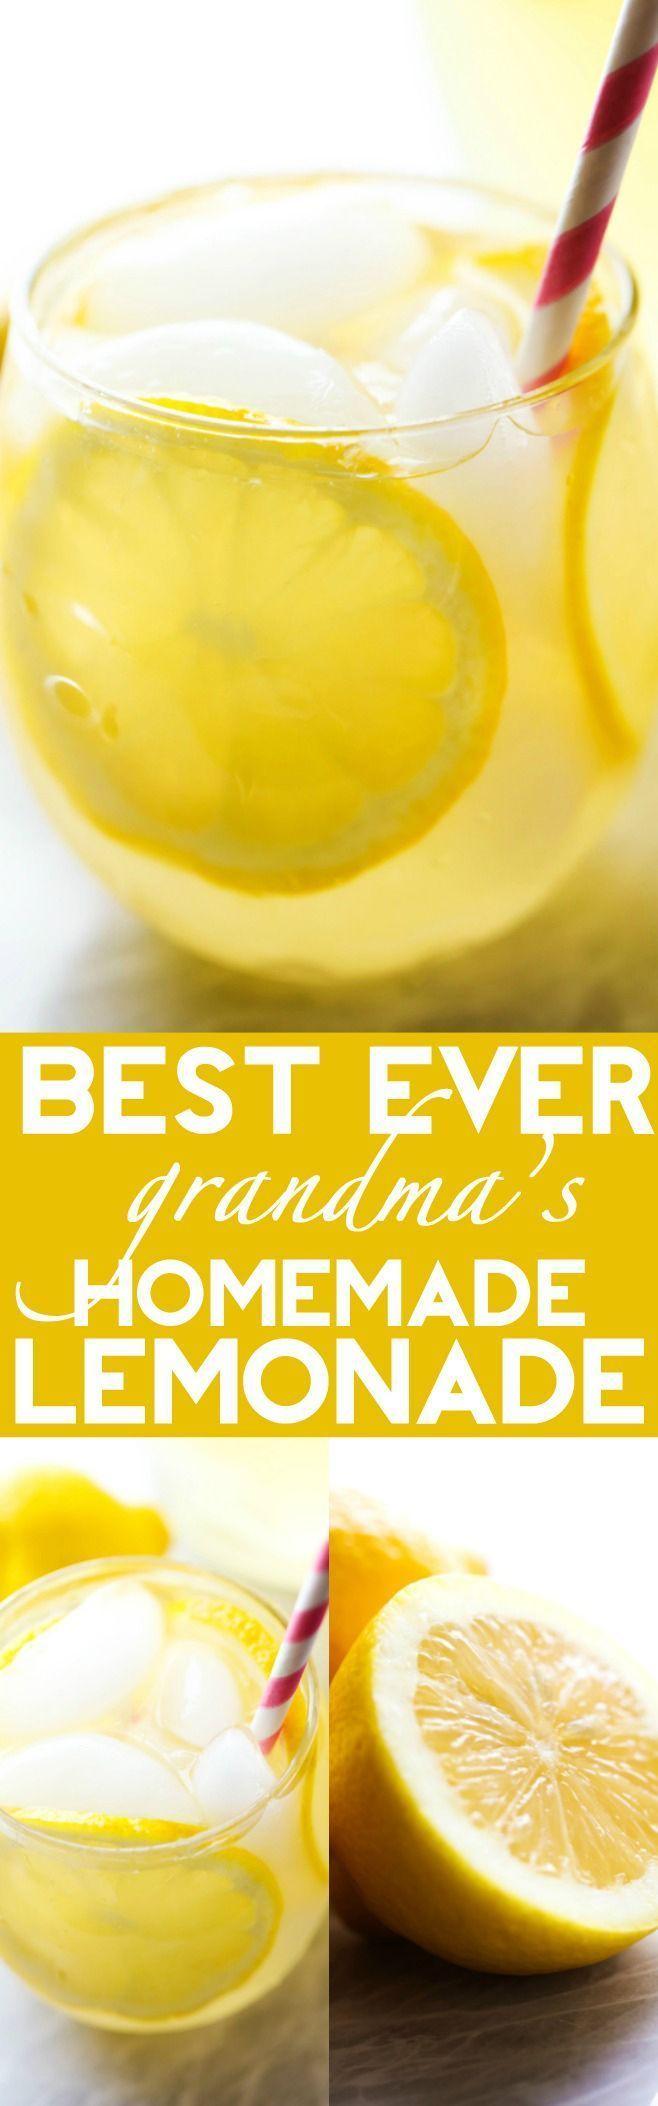 Hochzeit - Best Ever Homemade Lemonade